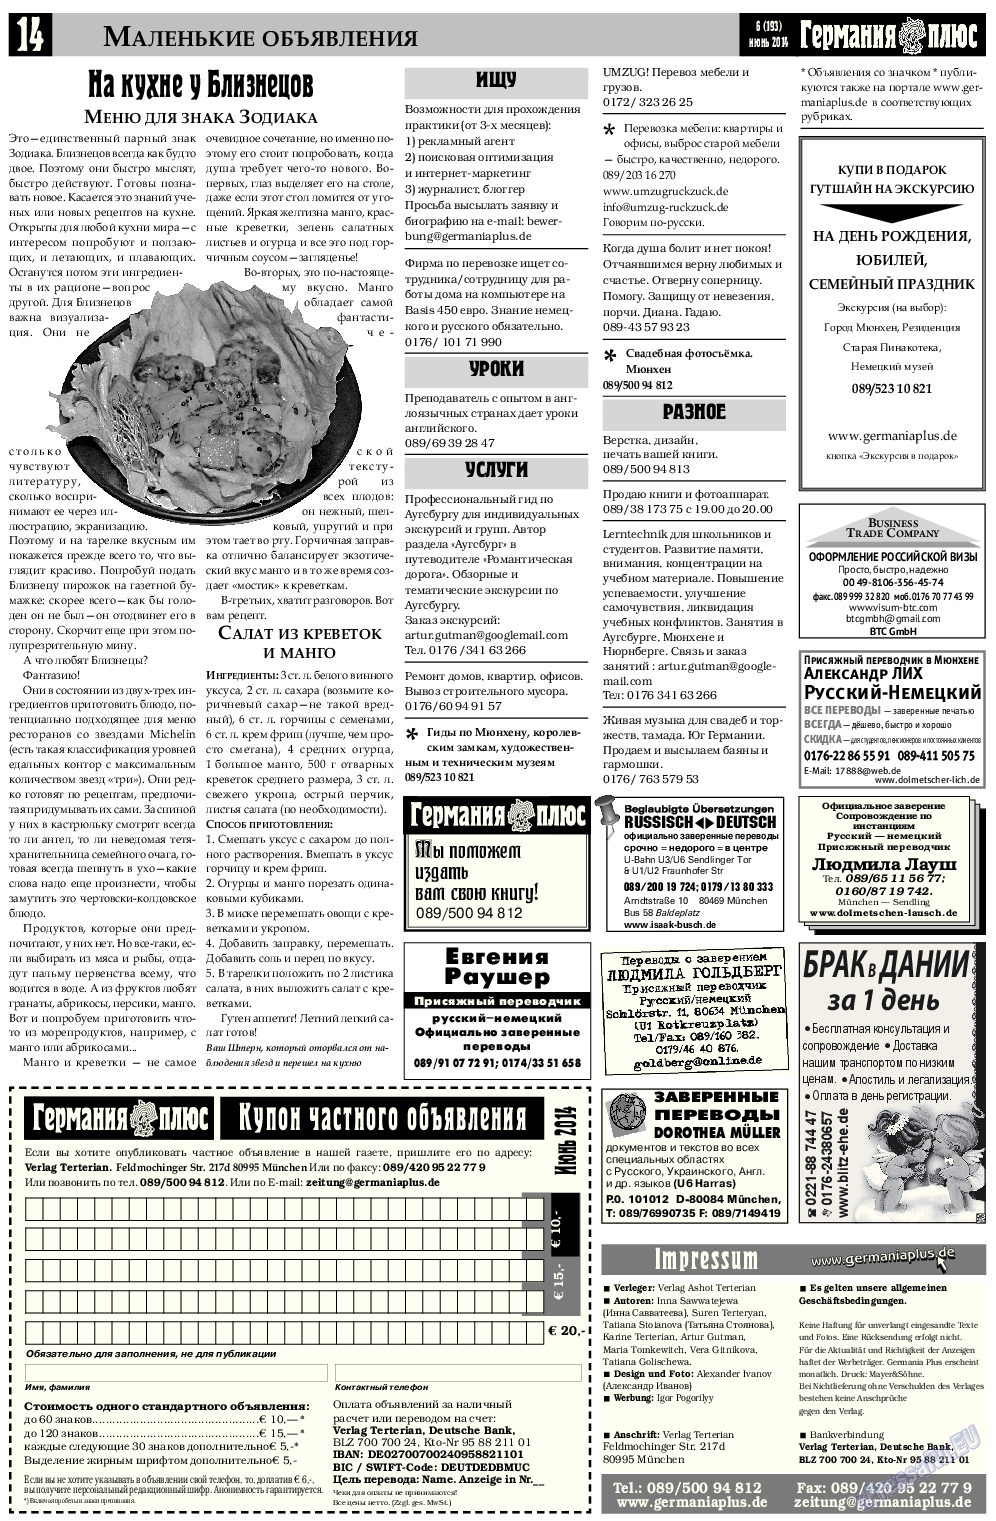 Германия плюс, газета. 2014 №6 стр.14